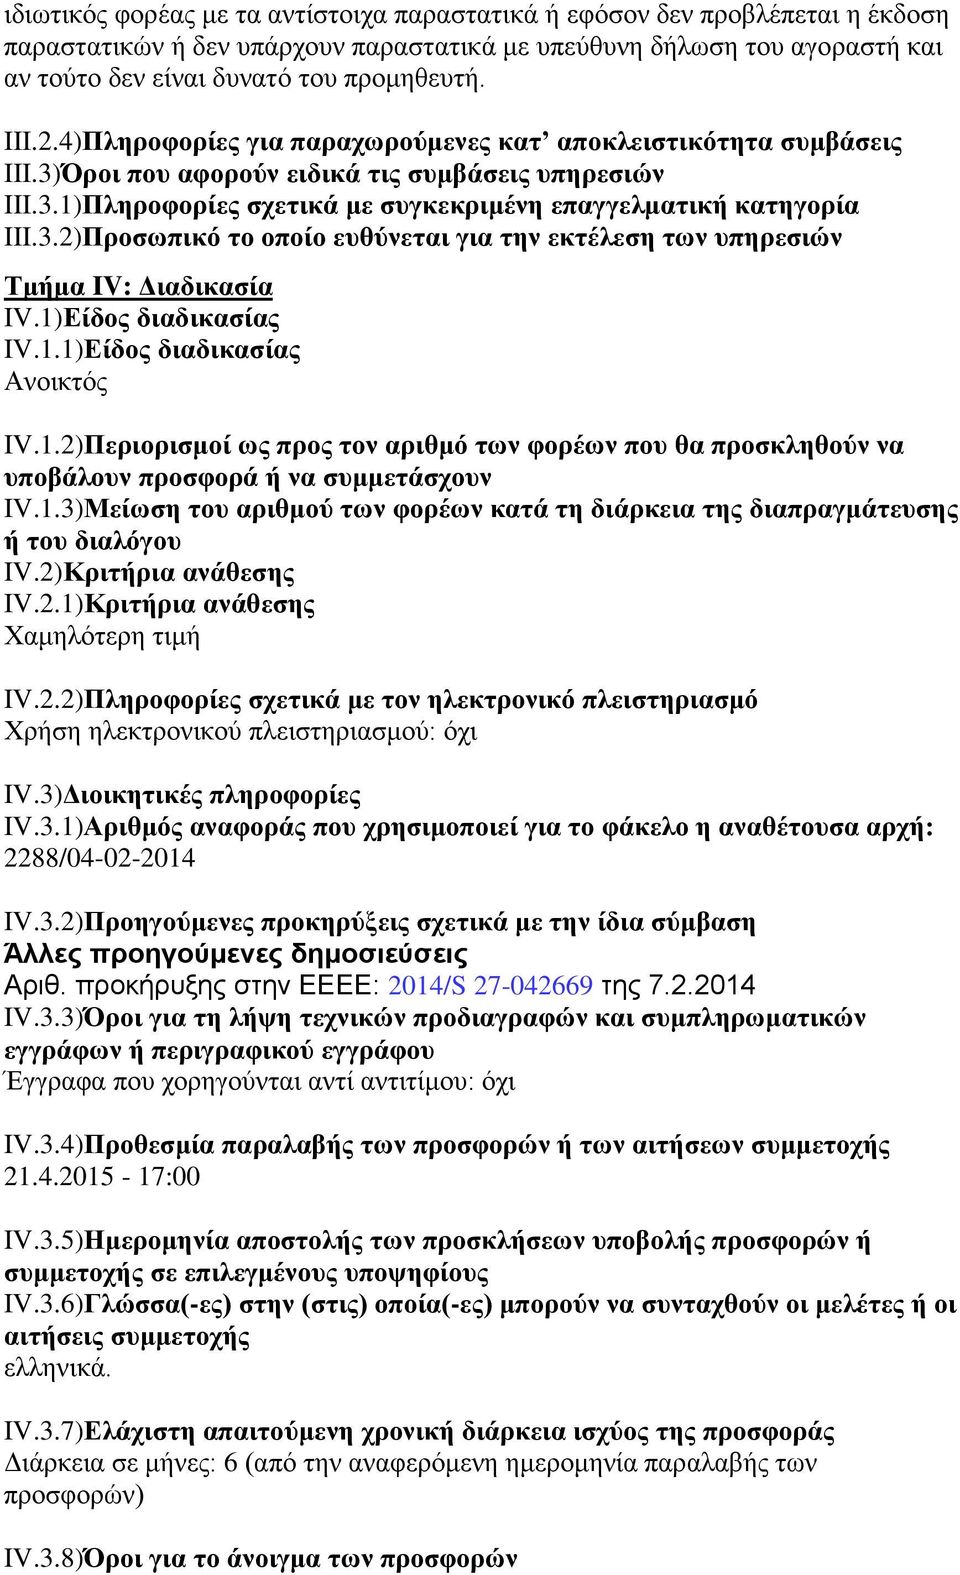 1)Δίδορ διαδικαζίαρ IV.1.1)Δίδορ διαδικαζίαρ Αλνηθηφο IV.1.2)Πεπιοπιζμοί υρ ππορ ηον απιθμψ ηυν θοπέυν πος θα πποζκληθοων να ςποβάλοςν πποζθοπά ή να ζςμμεηάζσοςν IV.1.3)Μείυζη ηος απιθμοω ηυν θοπέυν καηά ηη διάπκεια ηηρ διαππαγμάηεςζηρ ή ηος διαλψγος IV.